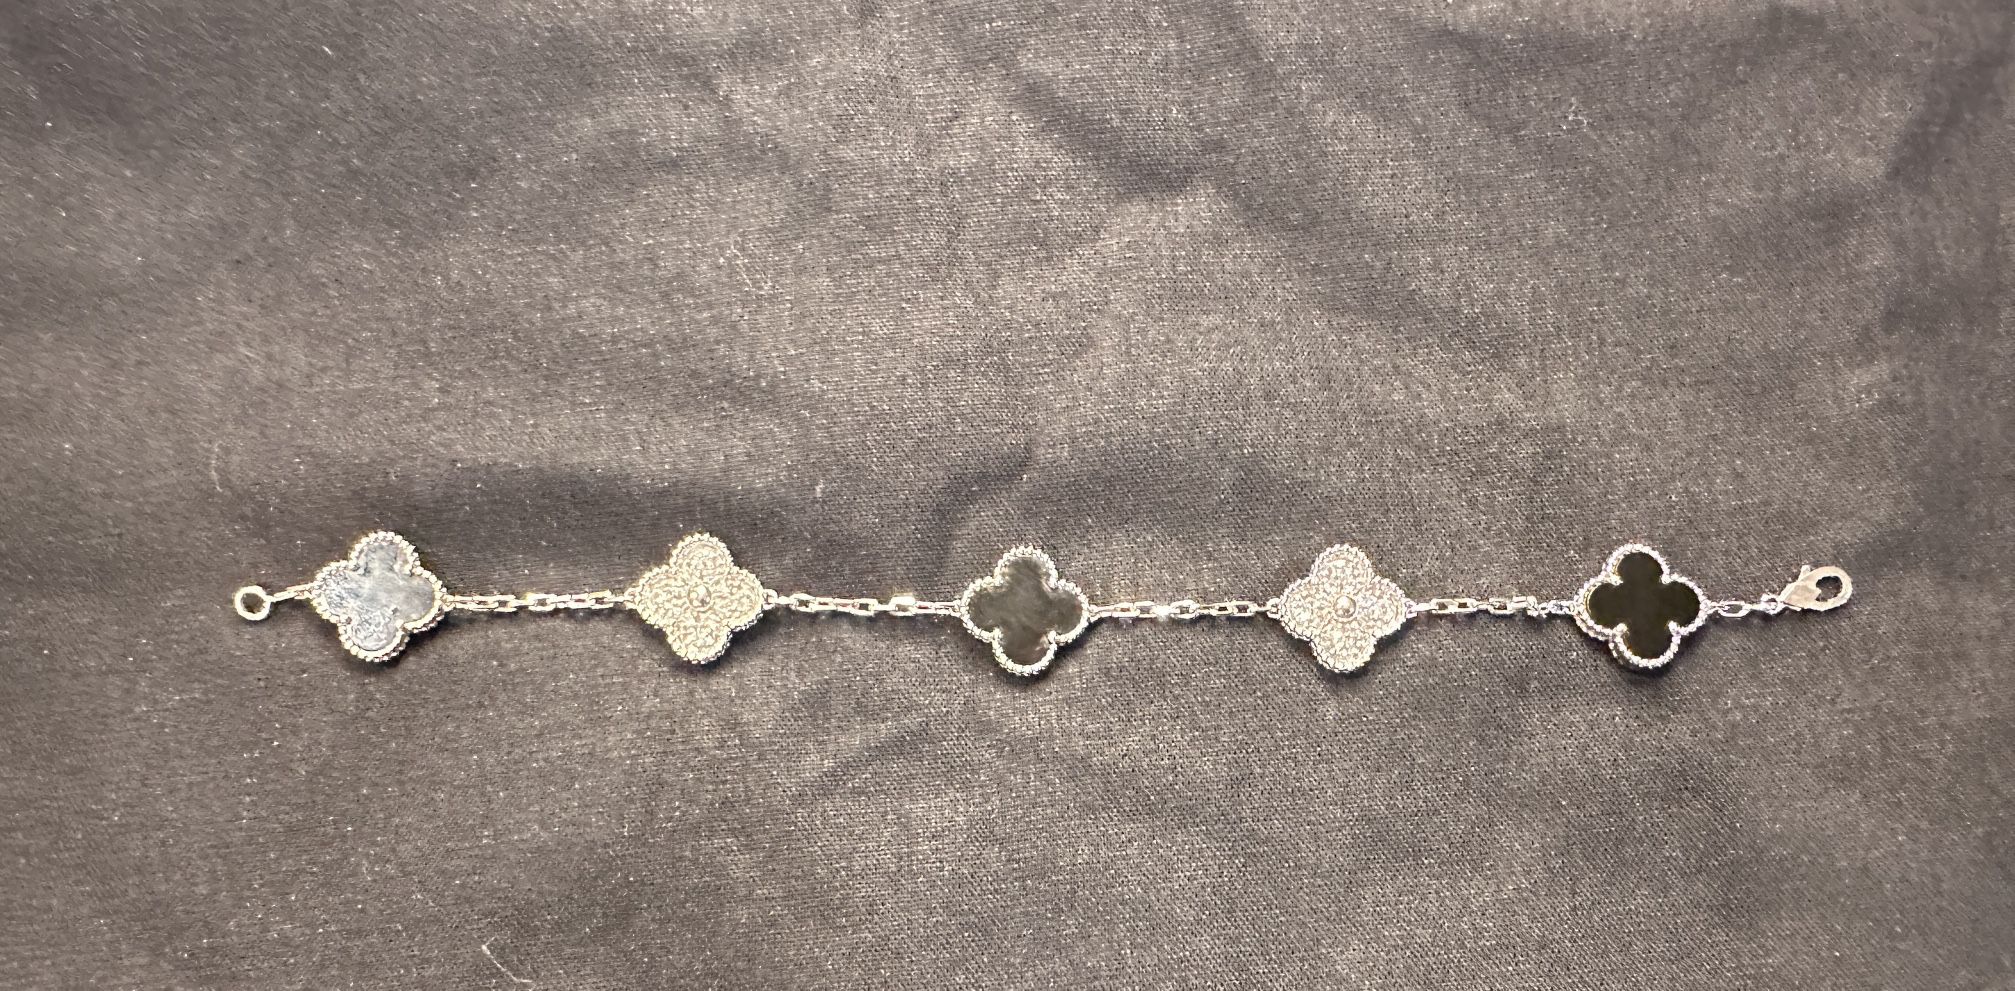 VCA vintage Alhambra Bracelet! Diamonds And Onyx!